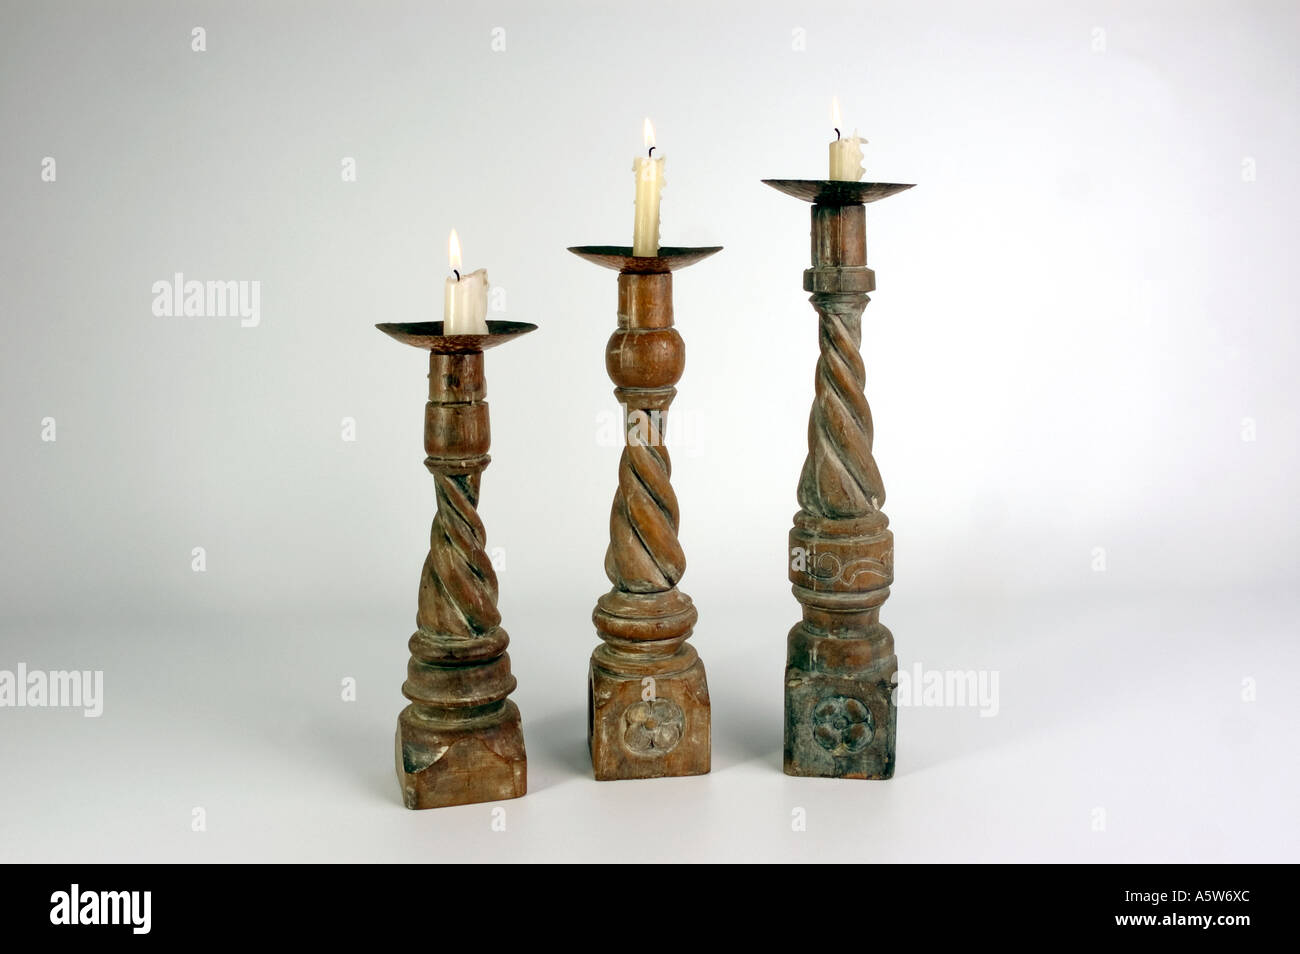 Antique Victorian barley twist wooden candlesticks with brass